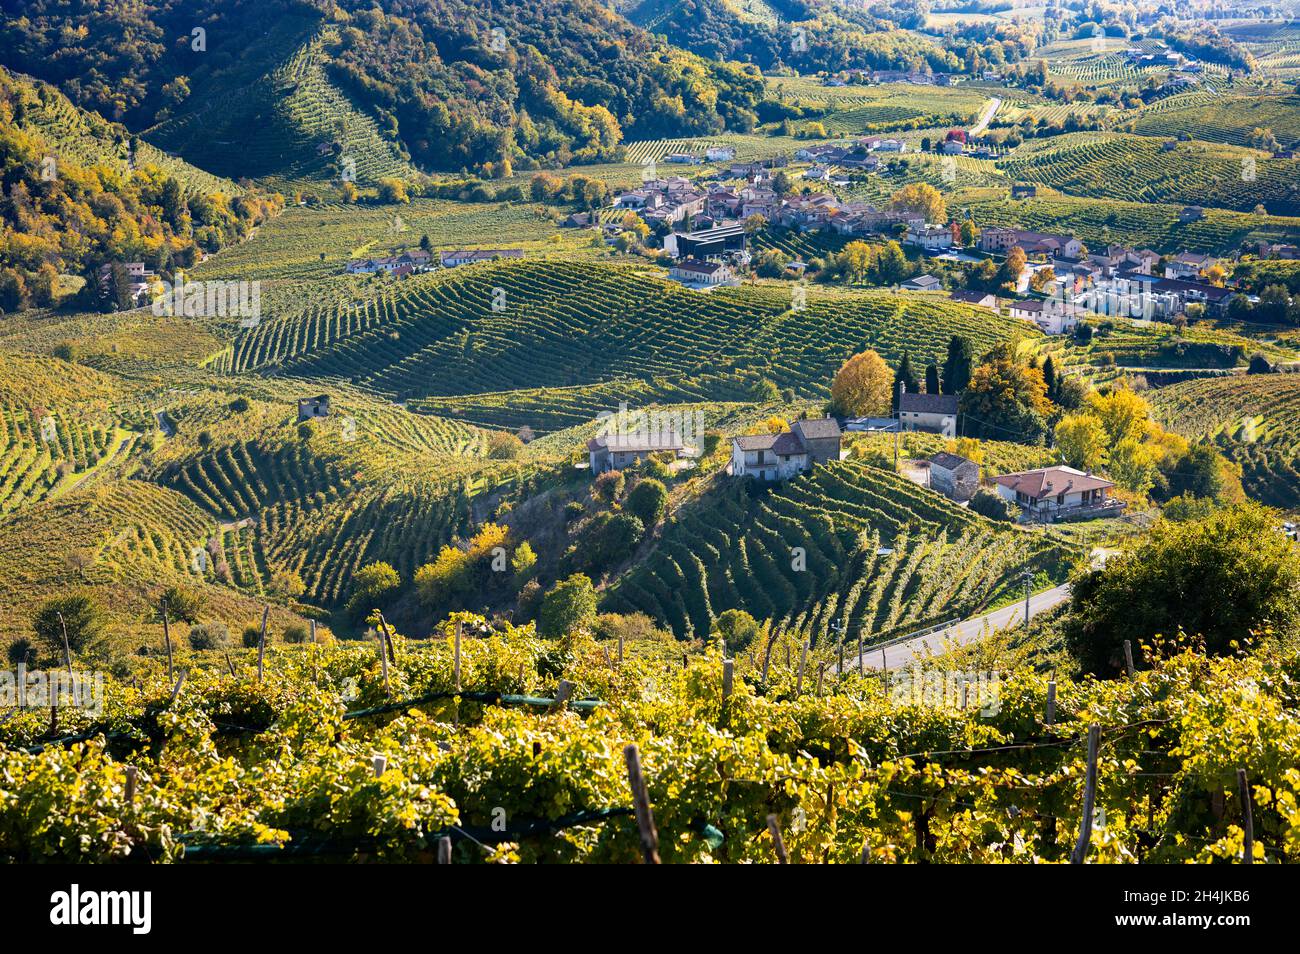 Valdobbiadene, hills and vineyards along the Prosecco road. Italy Stock Photo